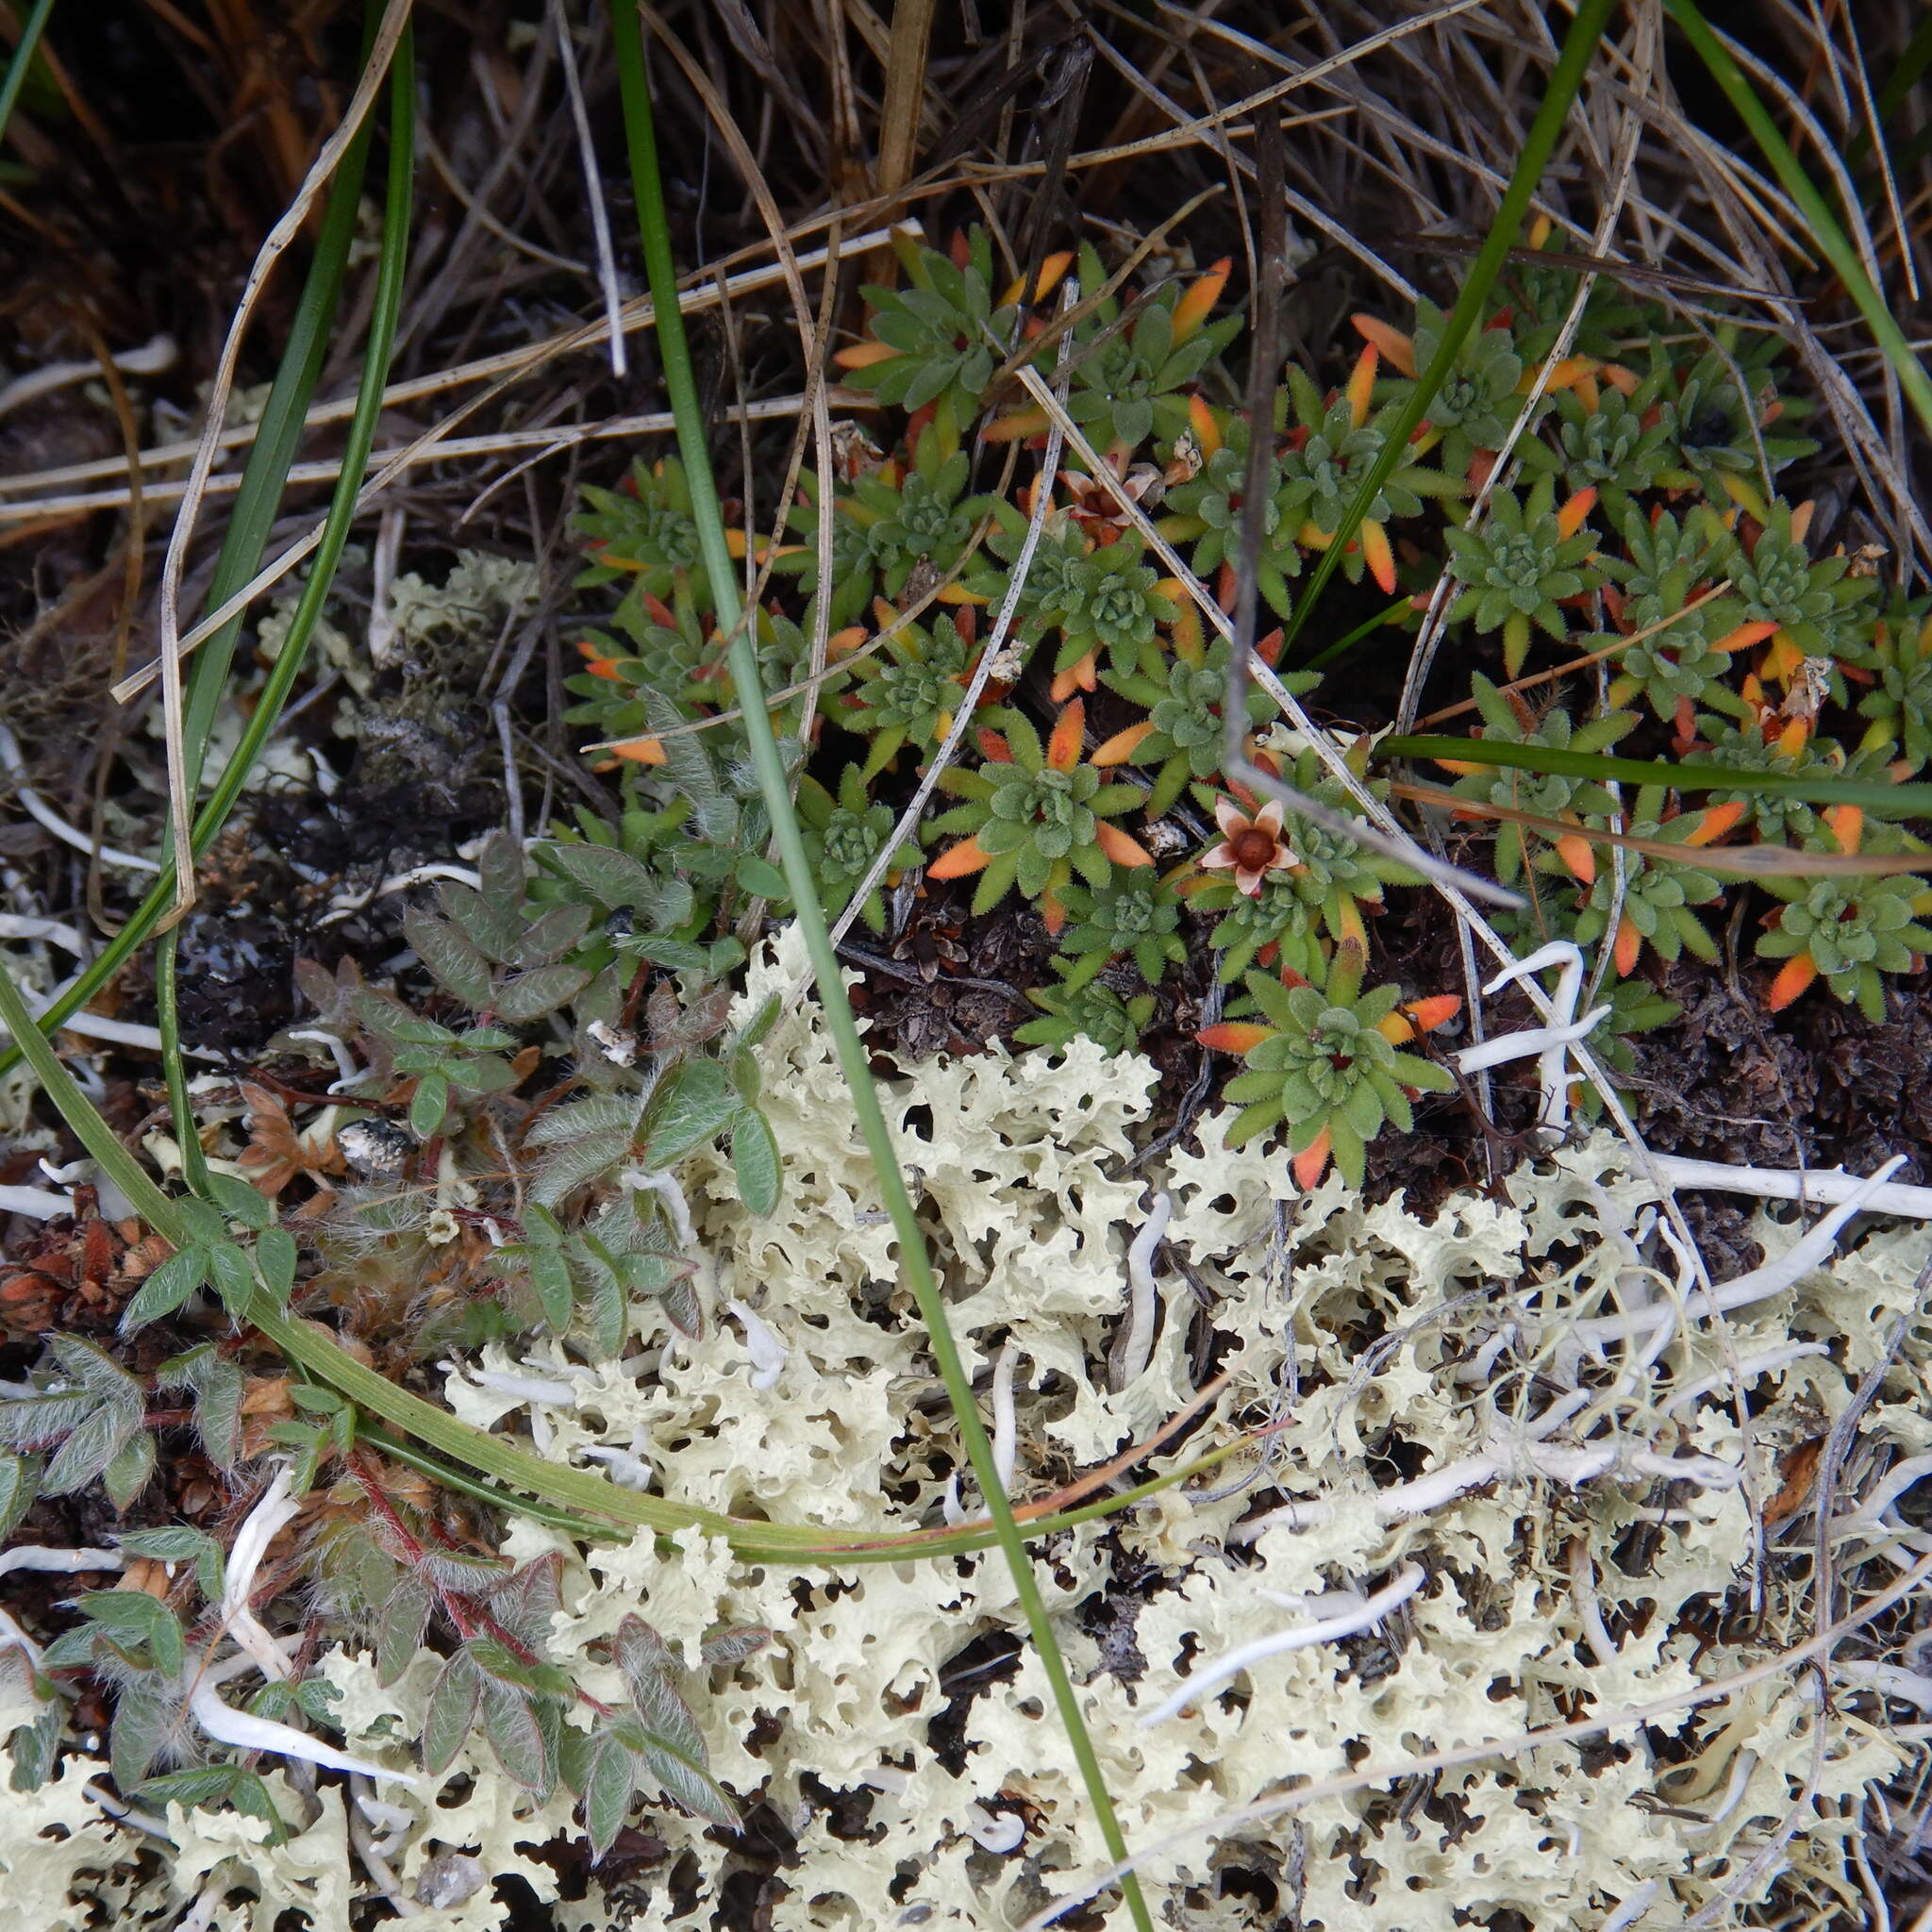 Image of Gorman's dwarf-primrose